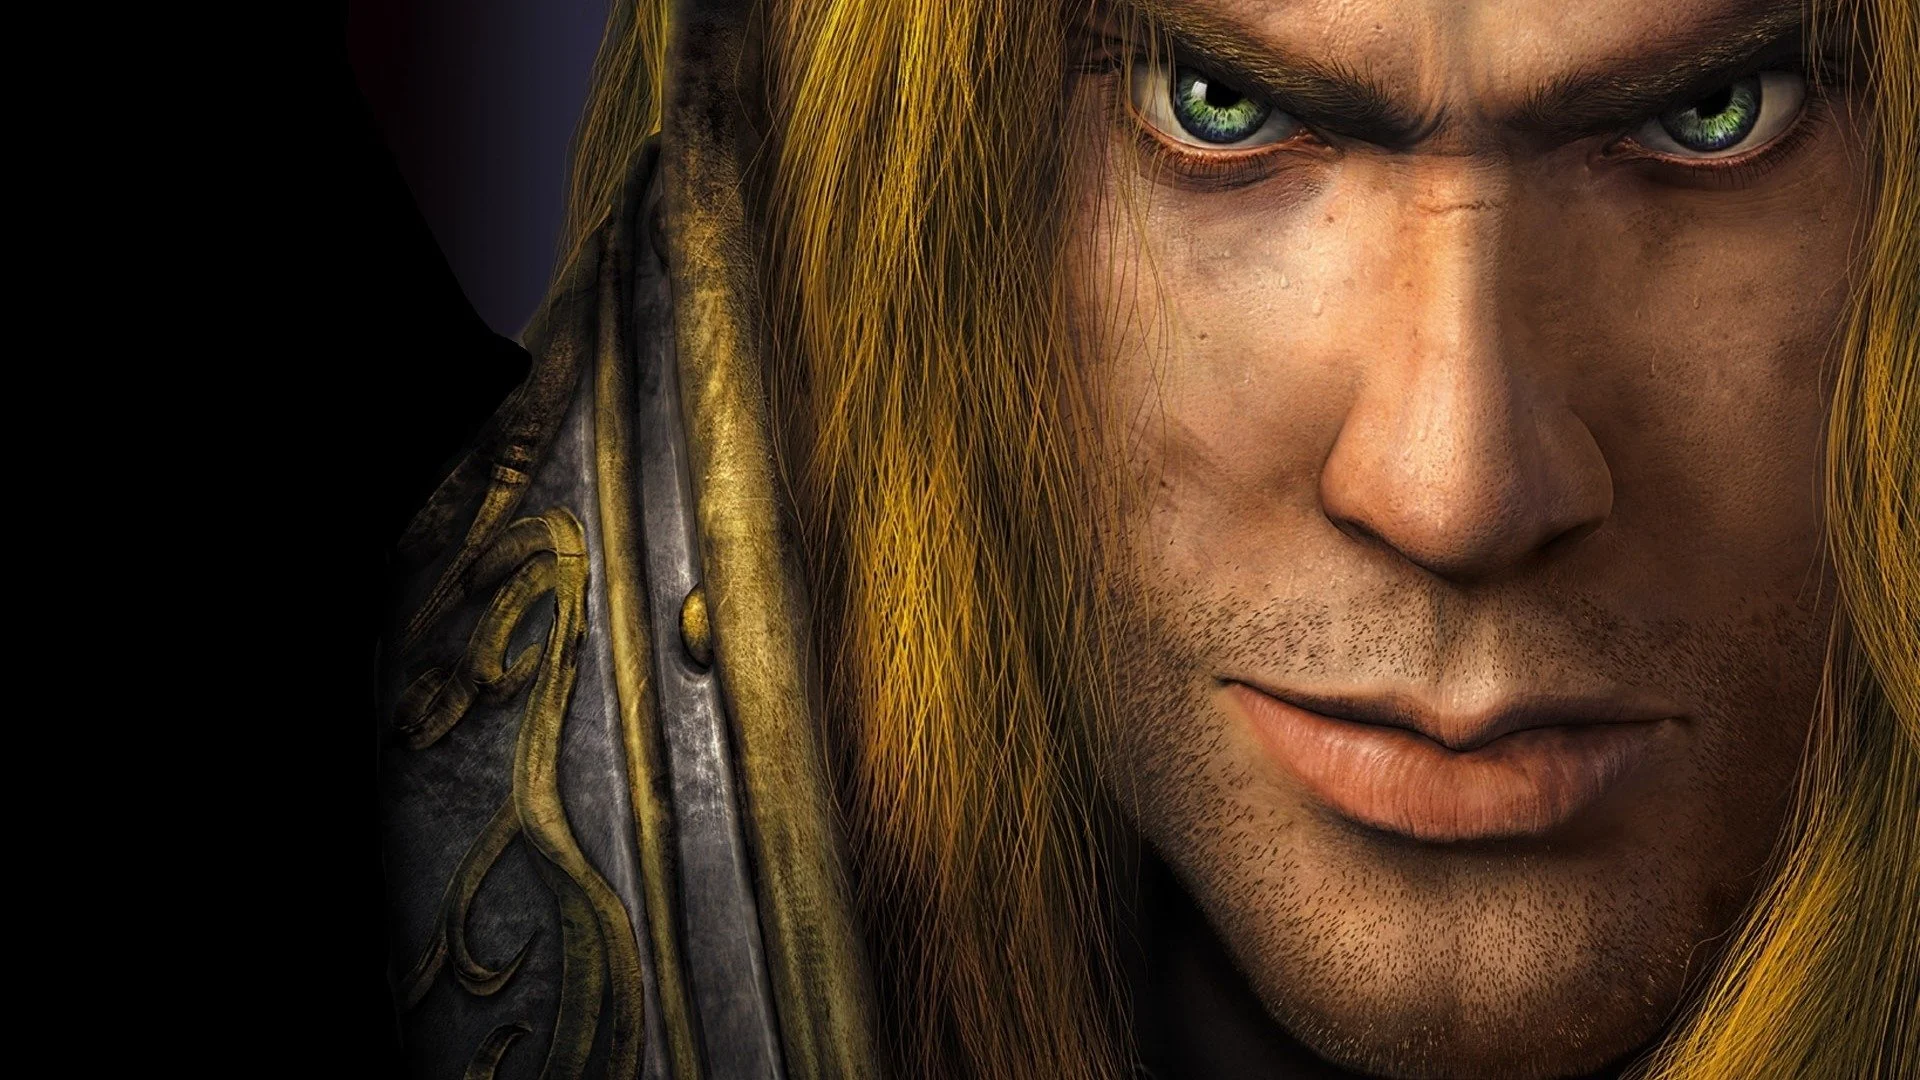 Да свершится предначертанное! Warcraft III получит новый патч - фото 1